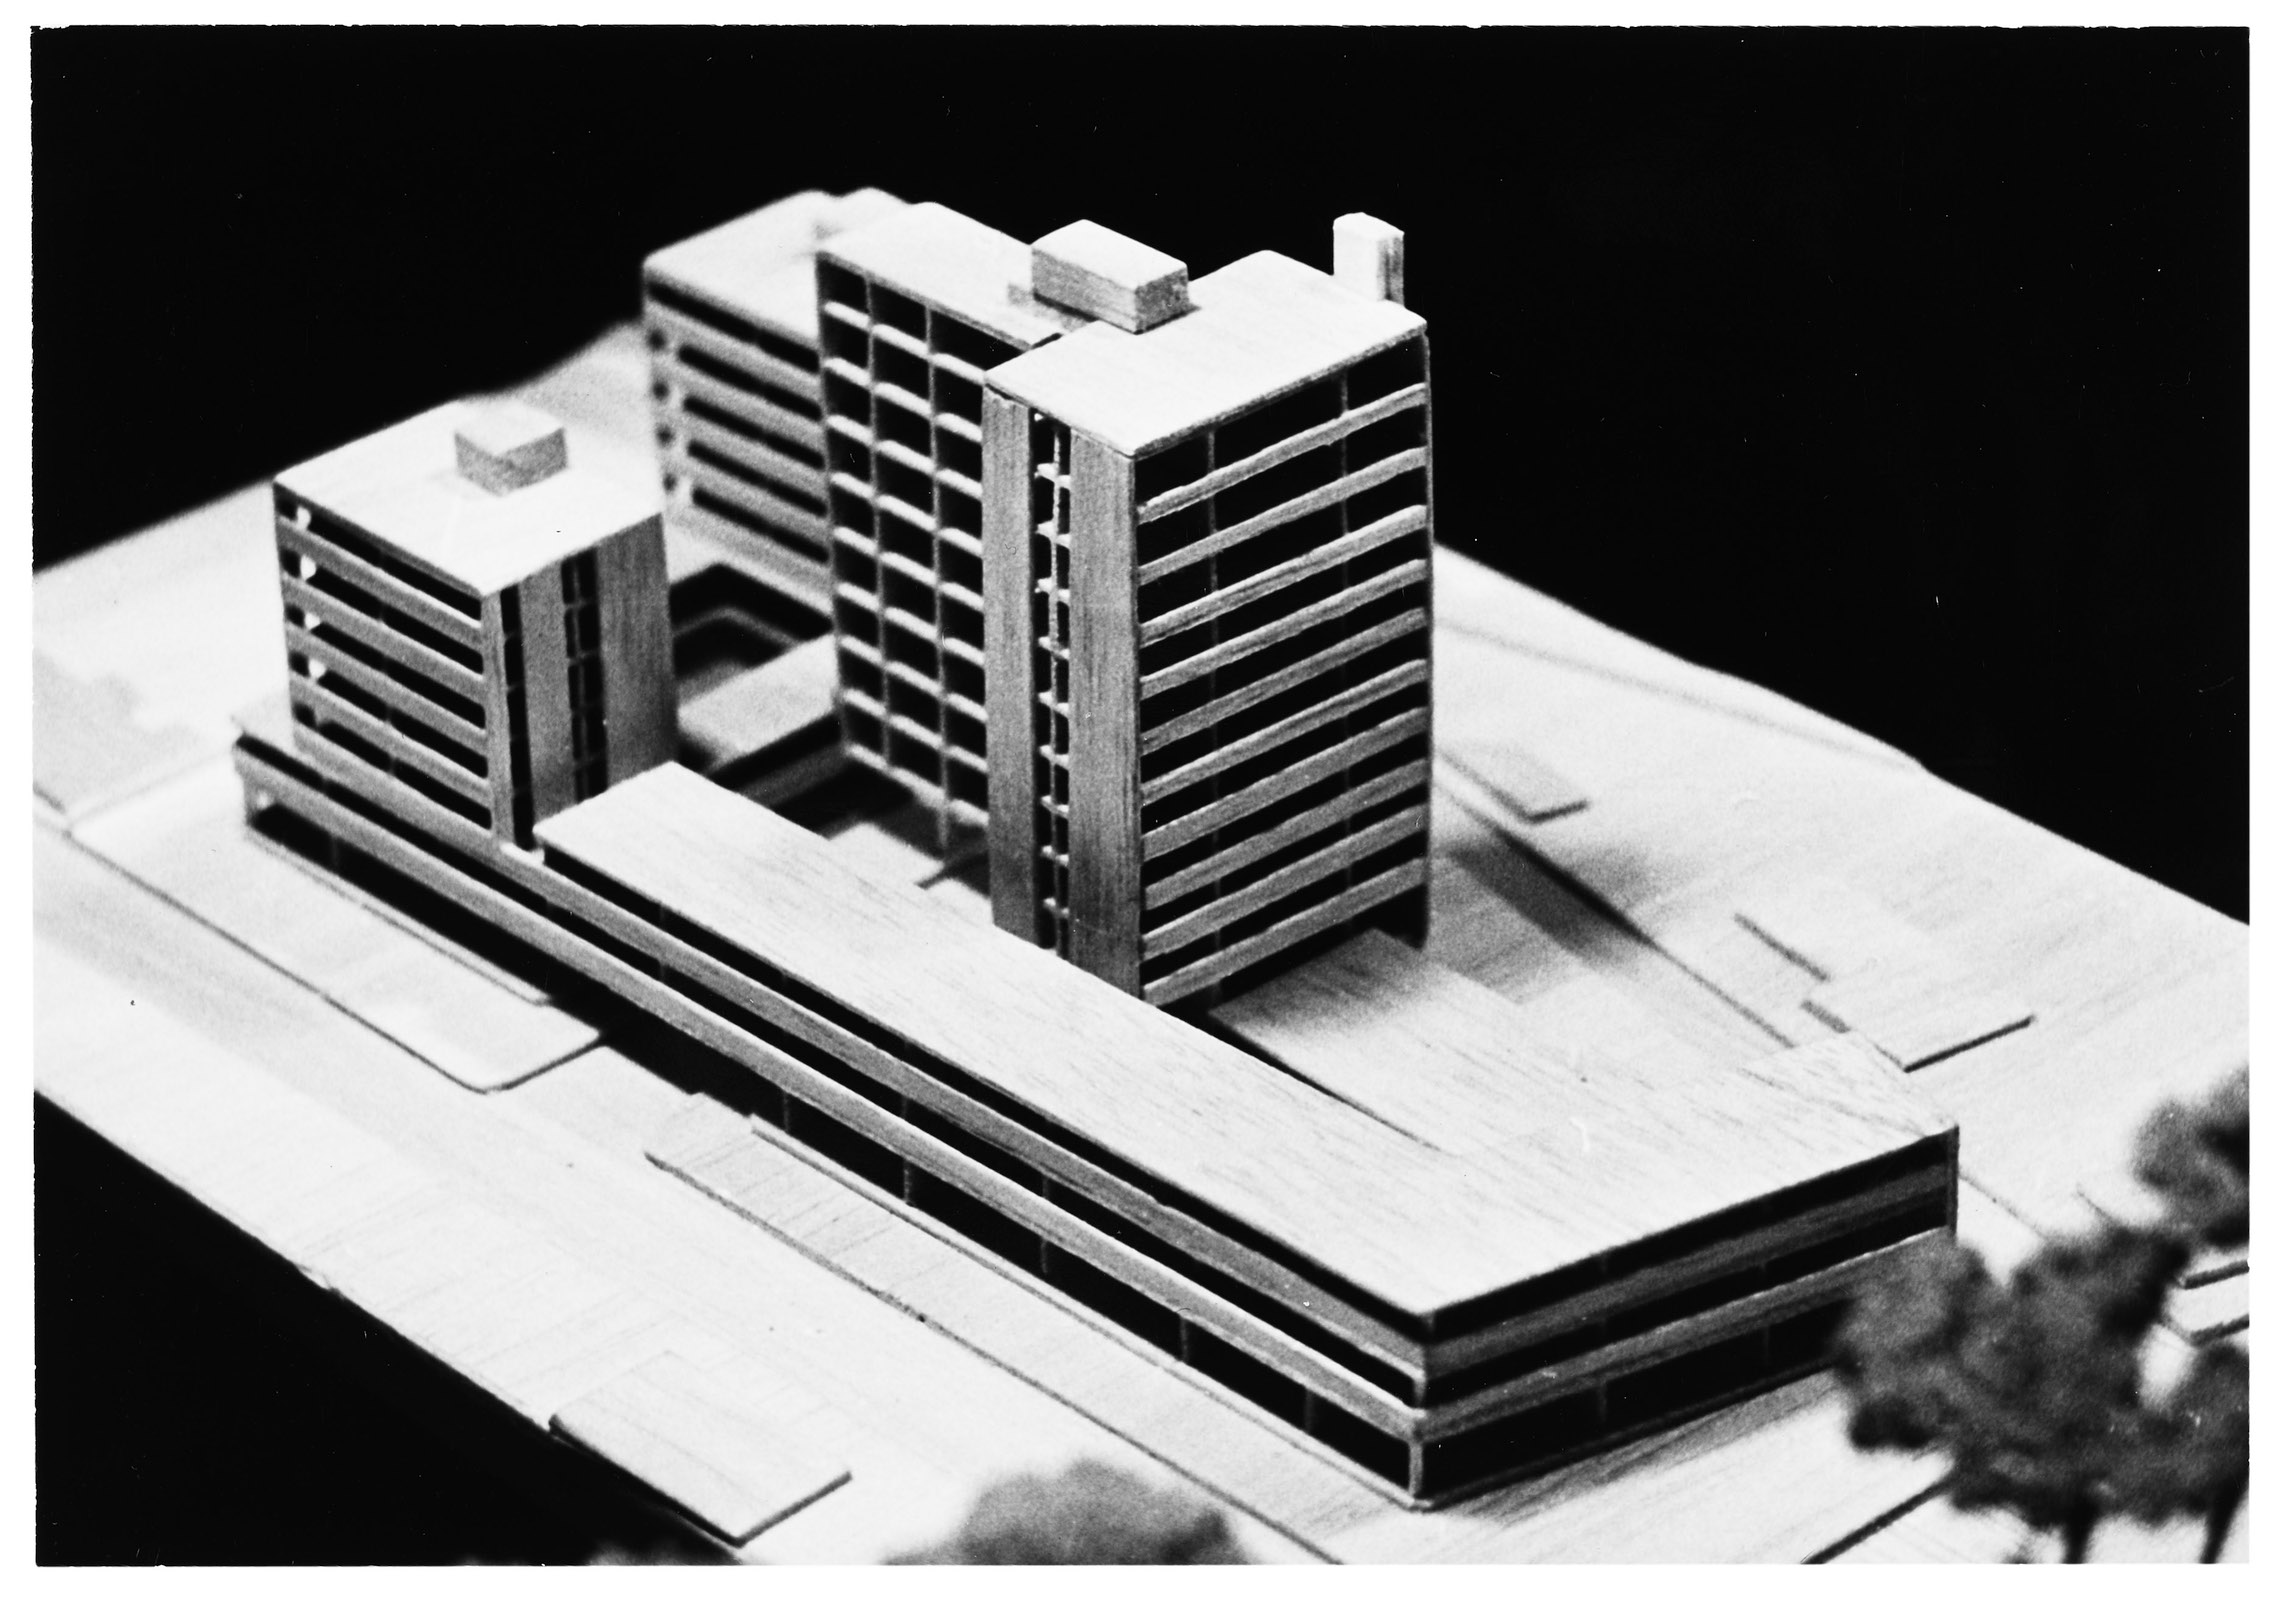 Gesamtmodell des städtebaulichen Entwurfs (© Archiv Architekt Pfeifer)